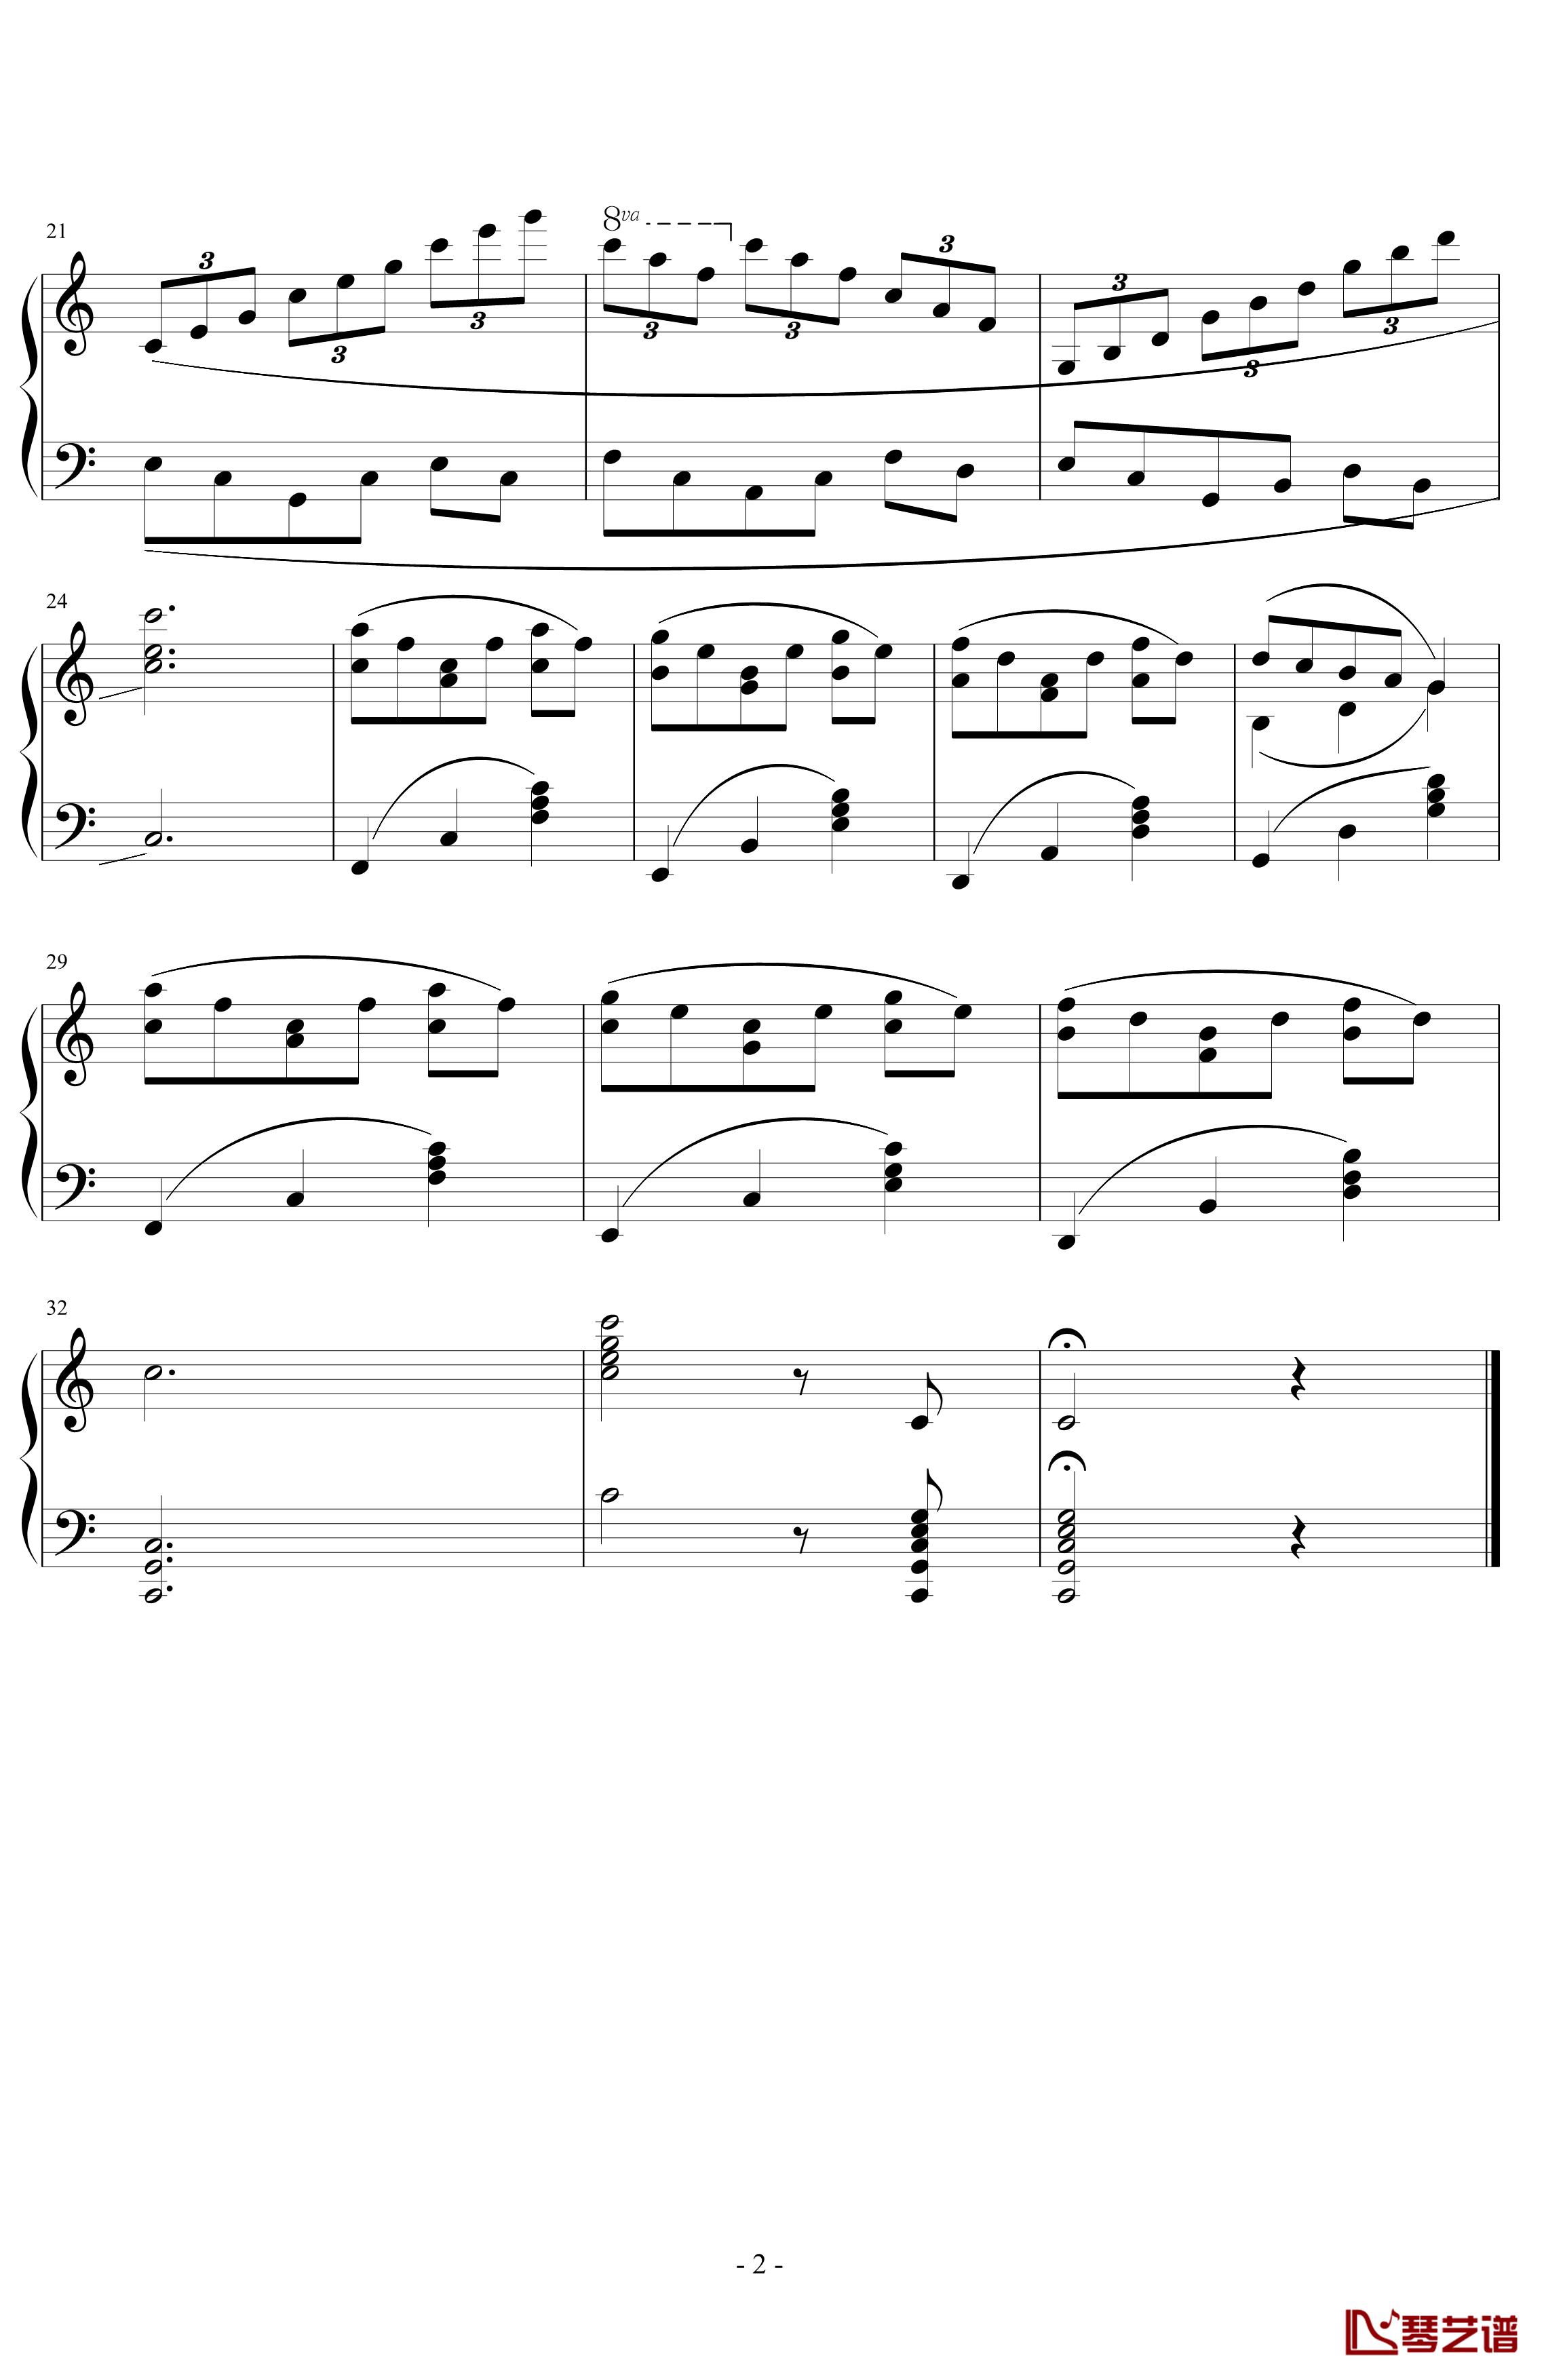 准练习曲第一首钢琴谱-尬哥2